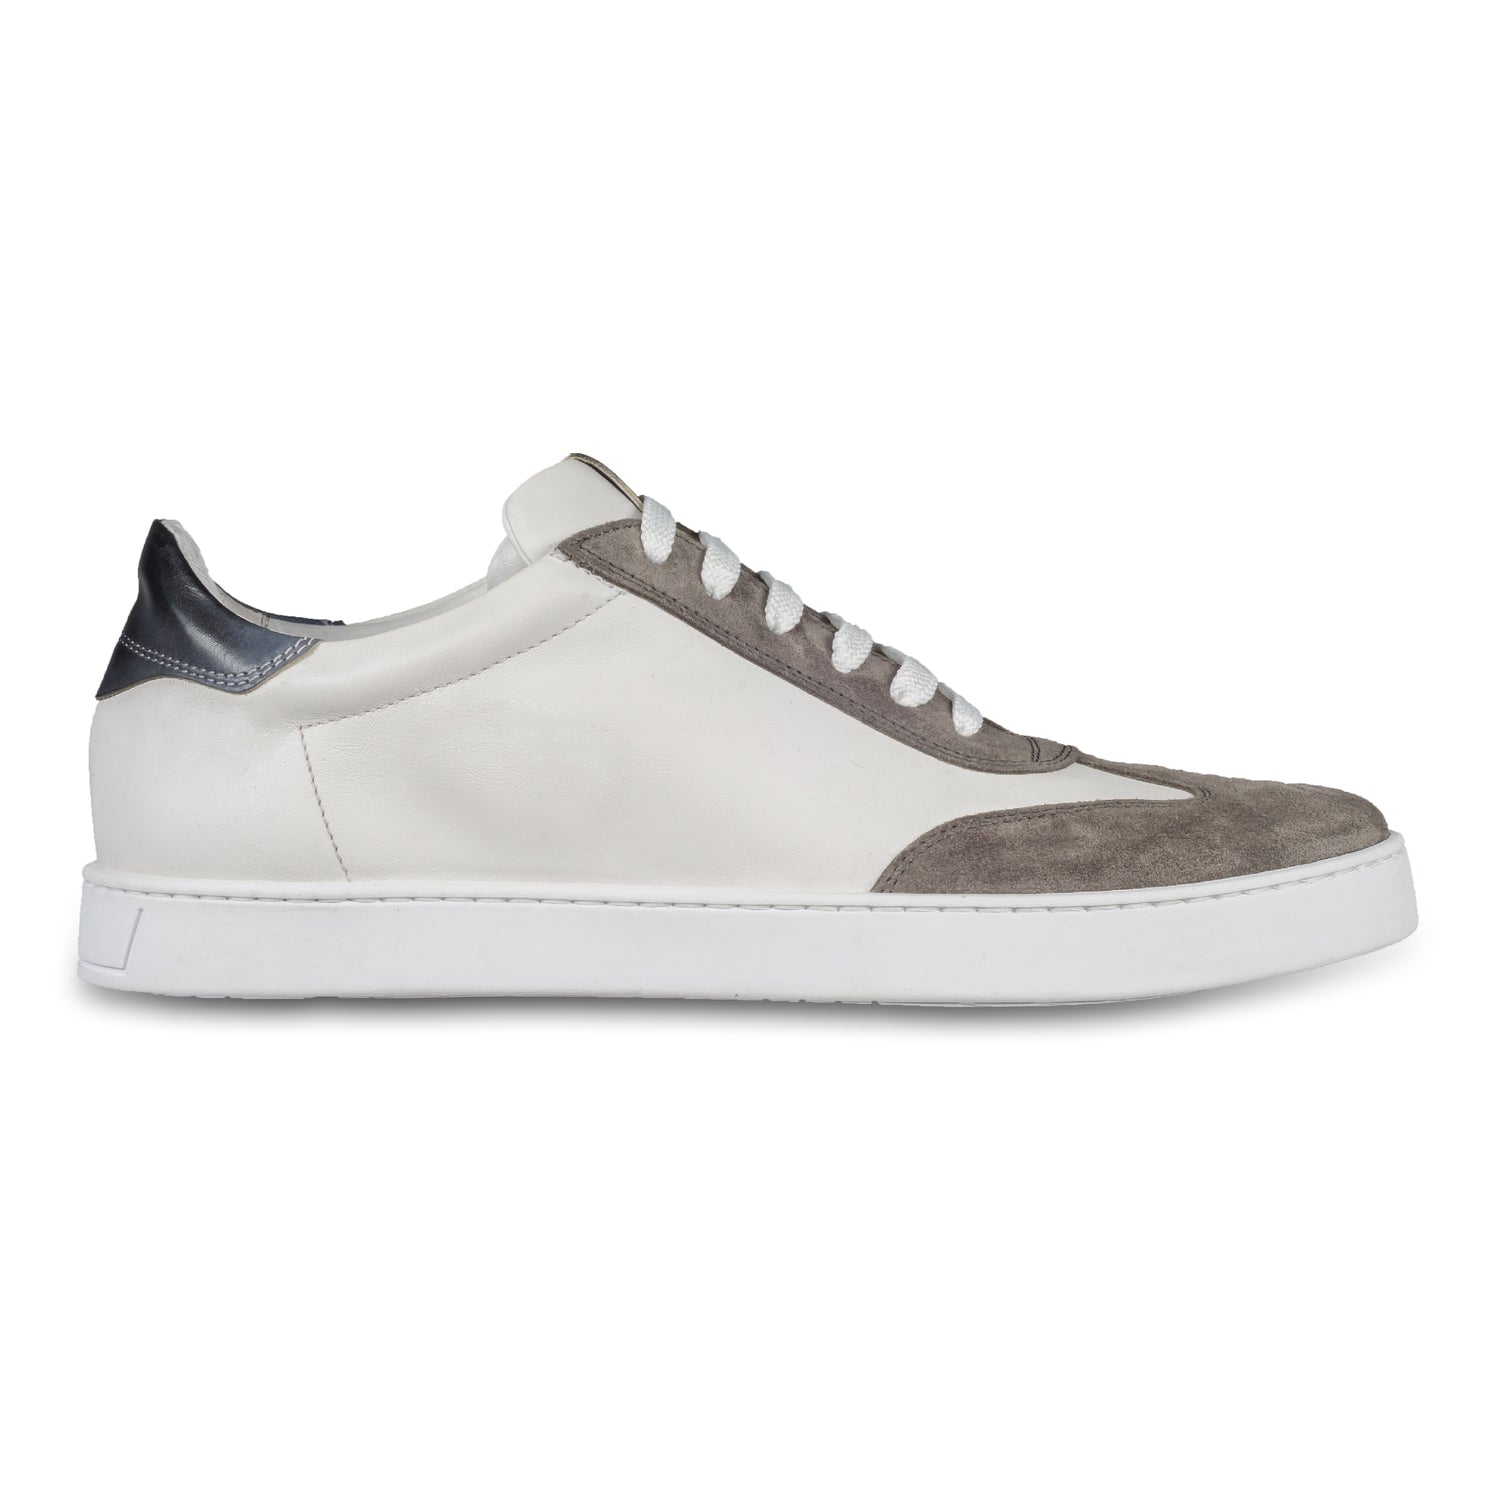 BRECOS –Herren Leder Sneaker in weiß, mit grauem Veloursleder an der Spitze und blauer Ferse, Durchgenäht. Seitliche Ansicht der Außenseite rechter Schuh. Bei Sisento.